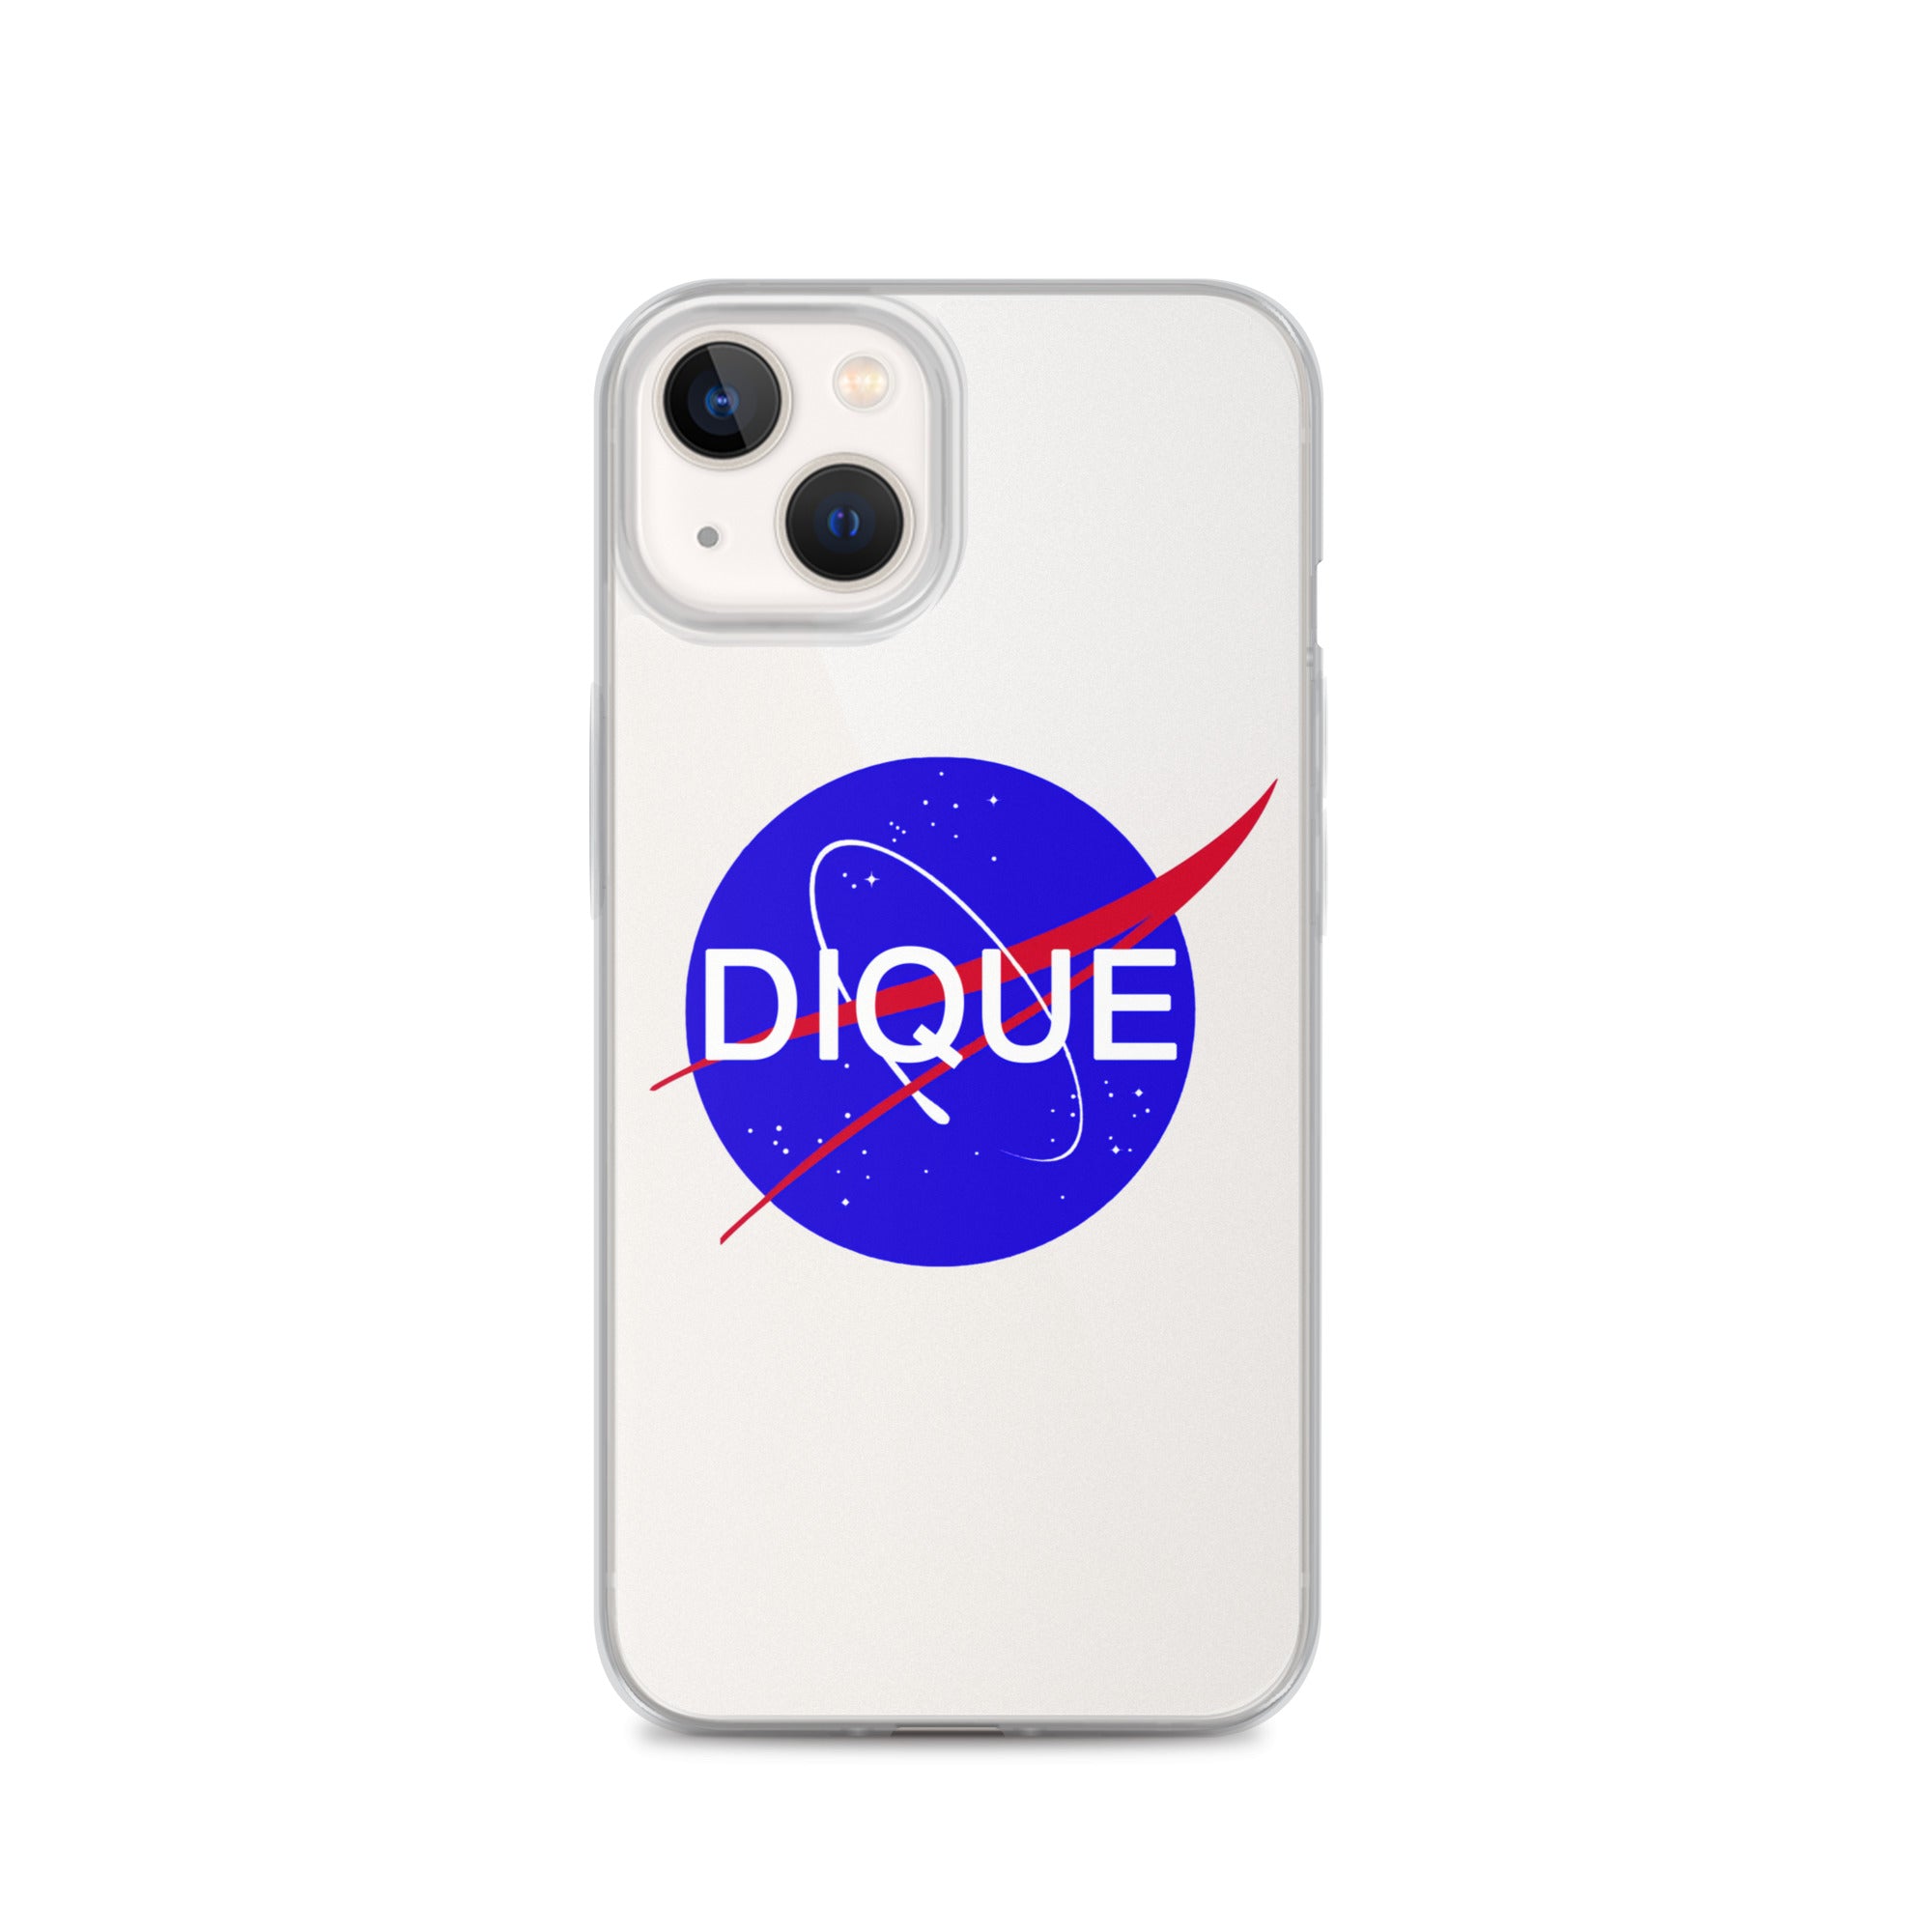 DIQUE X NASA iPhone Case